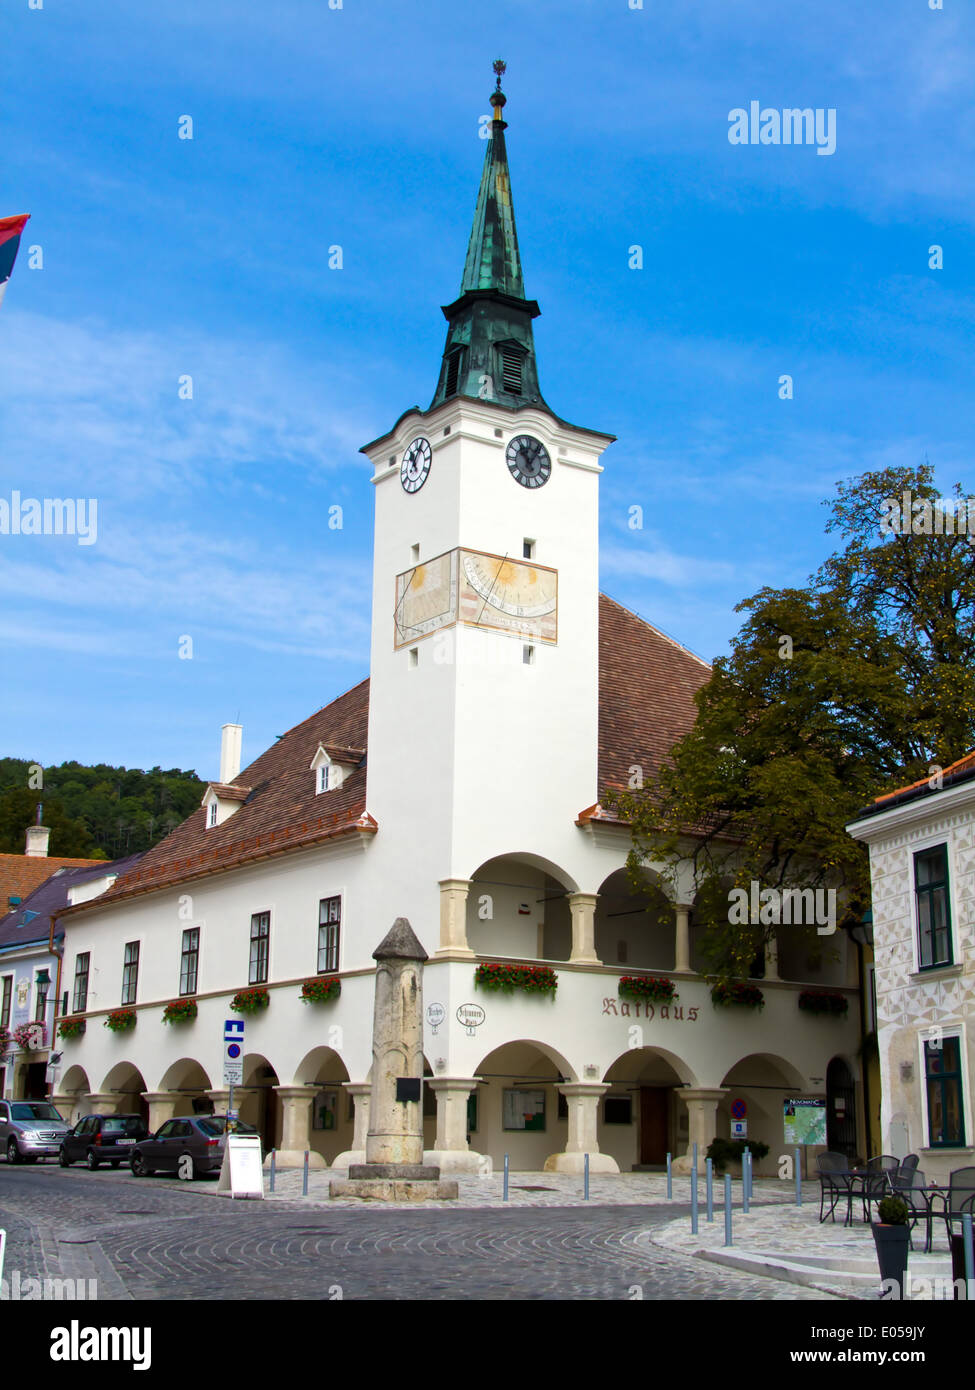 Austria, Lower Austria, Gumboldskirchen, townscape with church, oesterreich, Niederoesterreich, Stadtbild mit Kirche Stock Photo